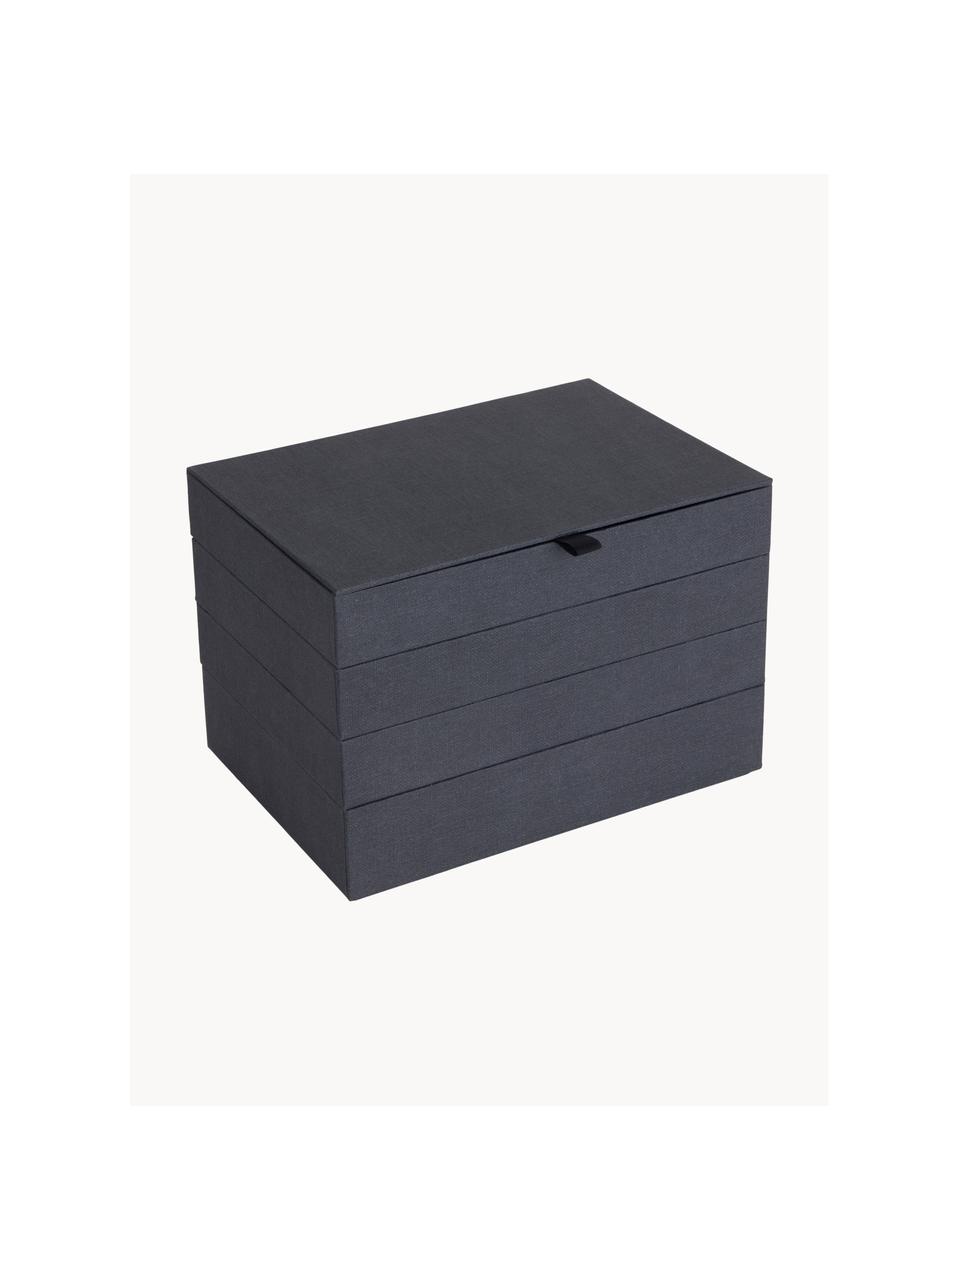 Schmuckbox Precious mit Magnet-Verschluss, Fester Karton, Anthrazit, B 27 x T 19 cm